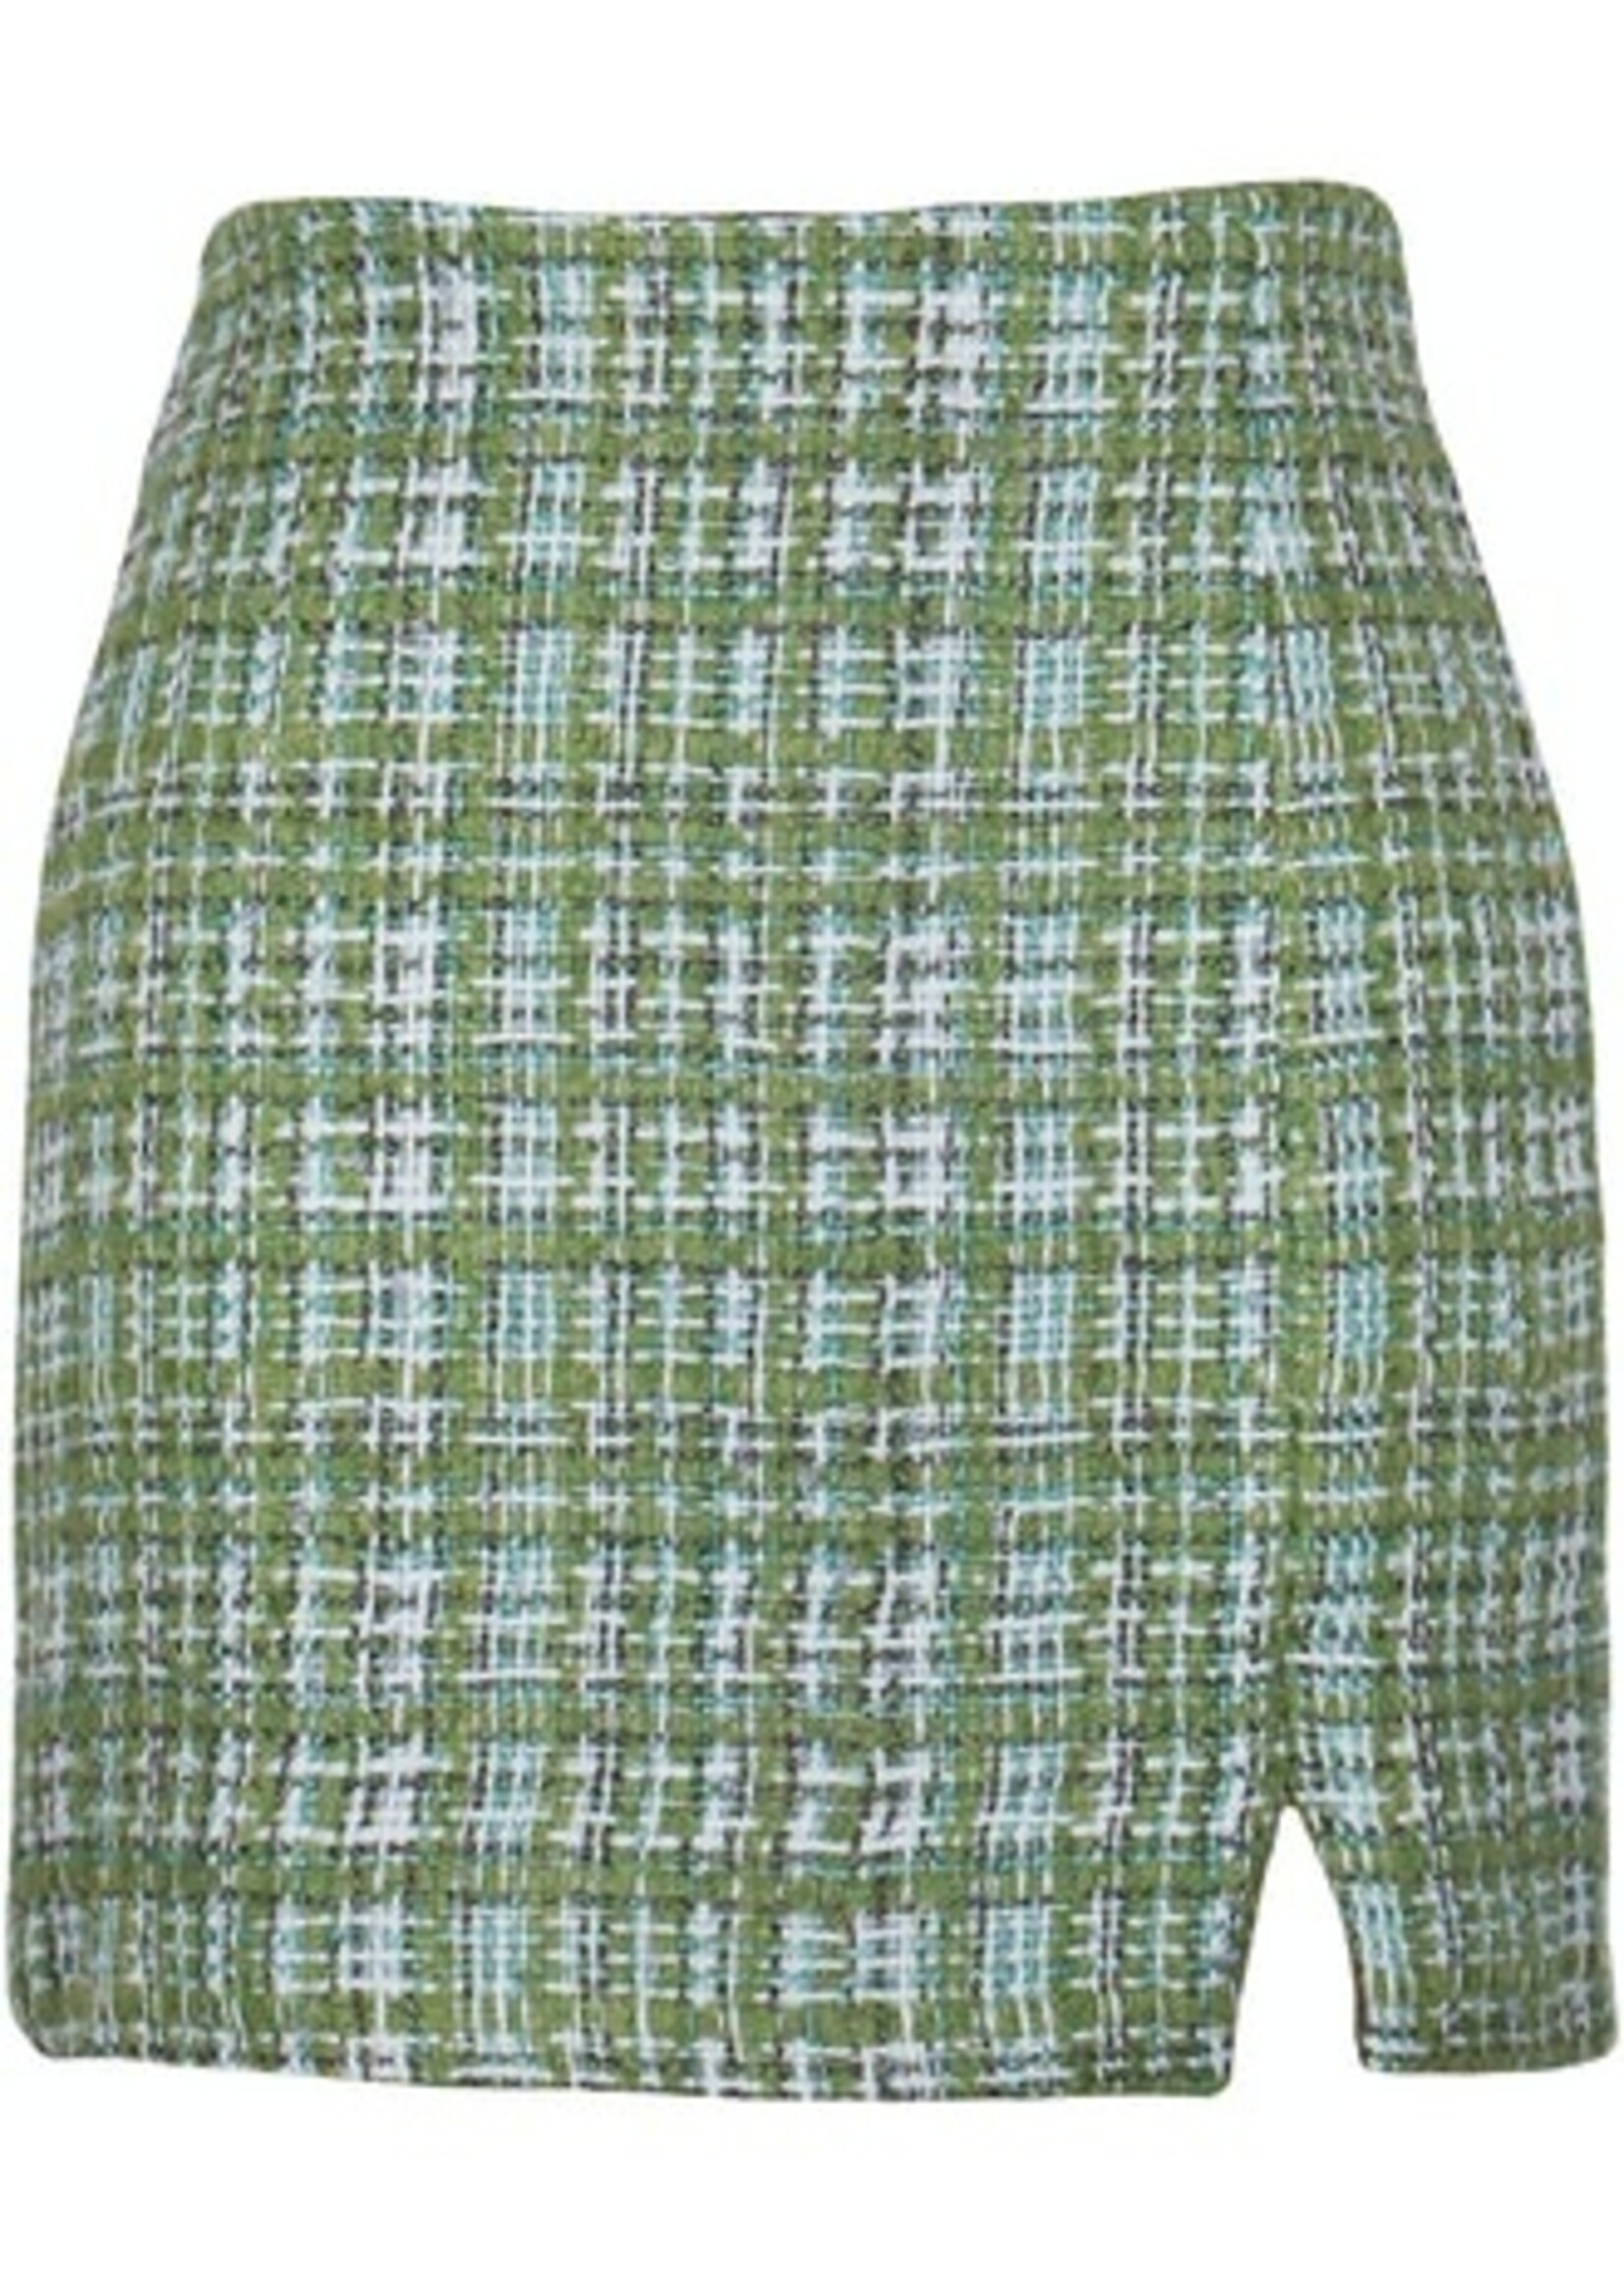 Dionne Mini Skirt Tweed Green